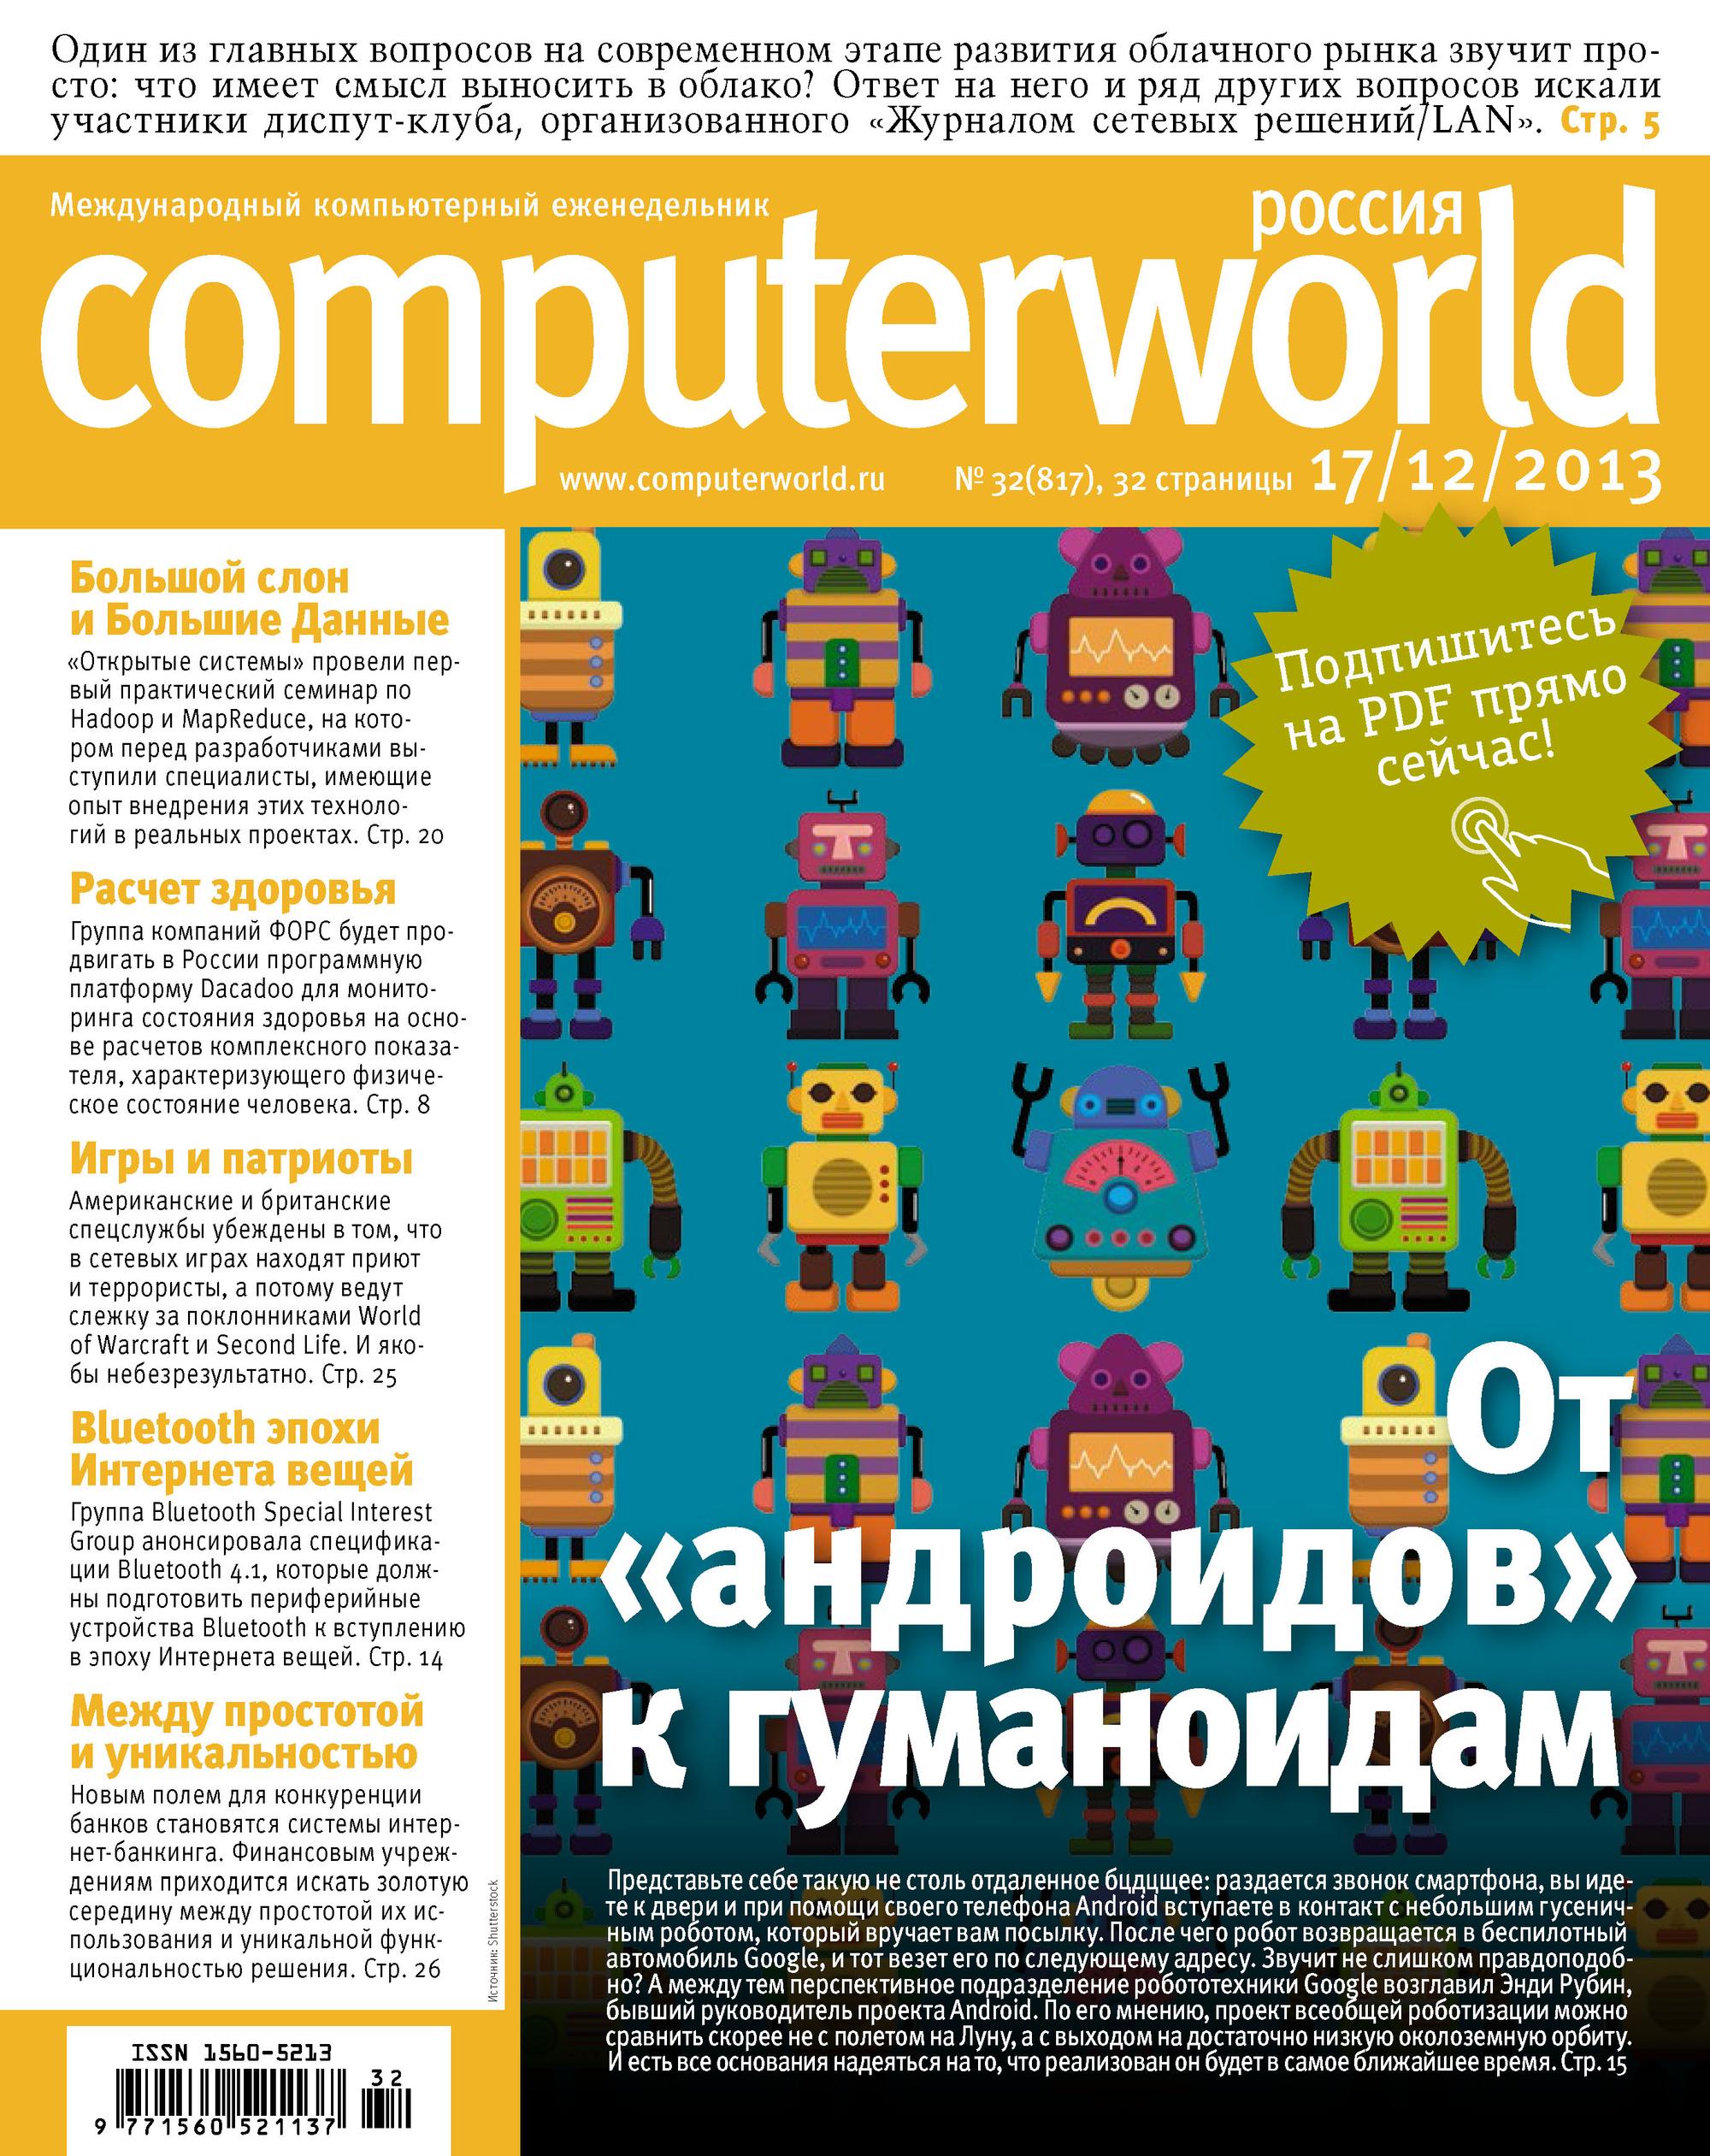 Мир россии журнал. Computerworld журнал новый. Computerworld.